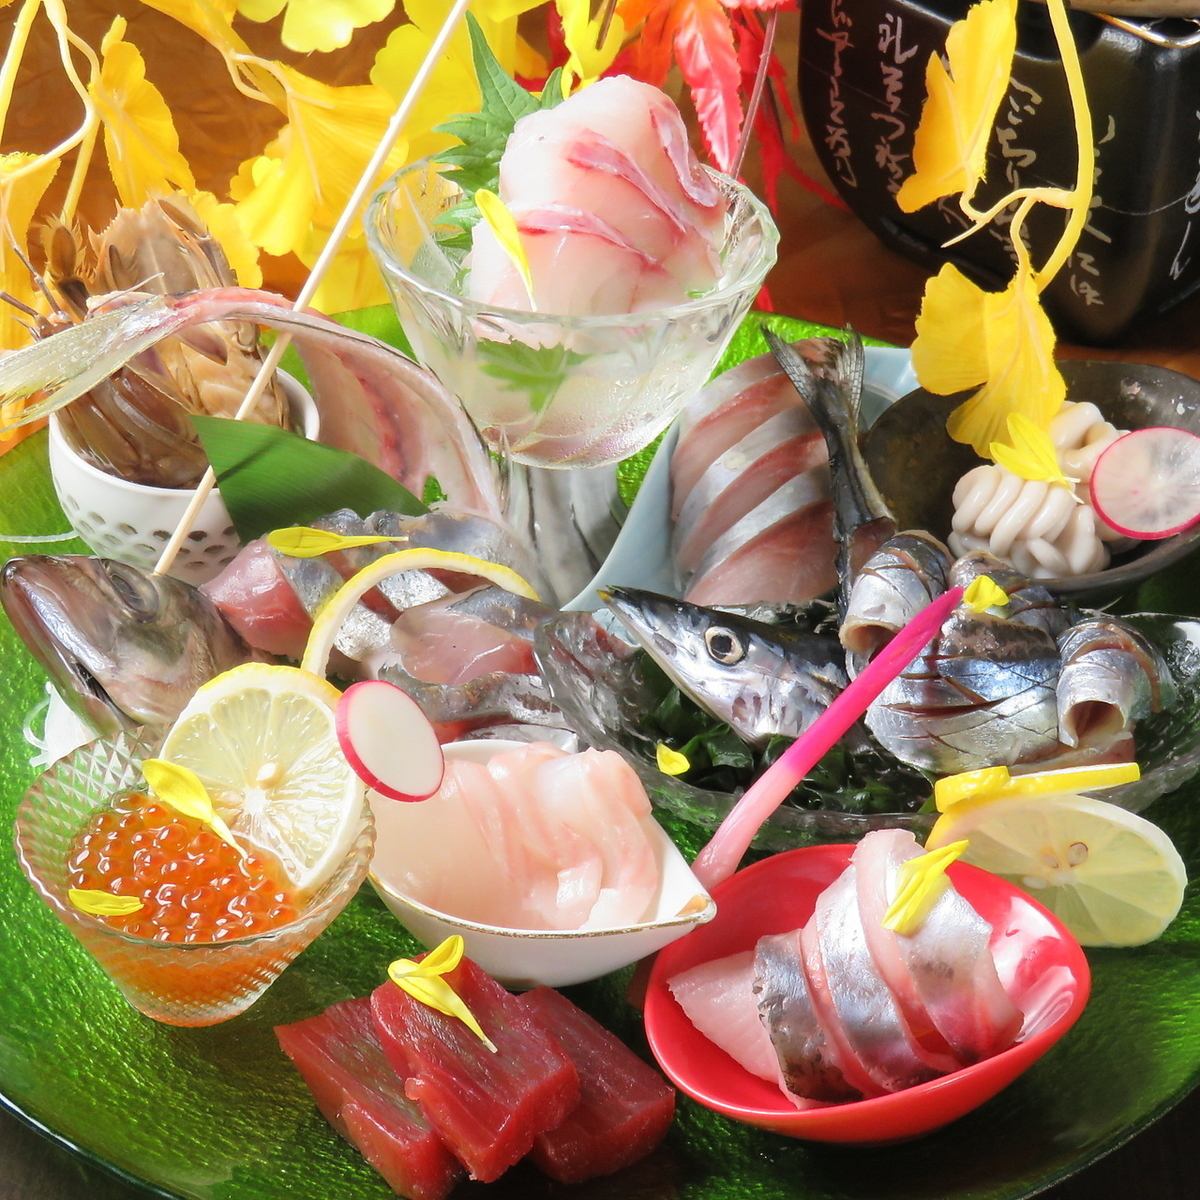 每天從市場採購的新鮮海鮮、A5級和牛牛排、北海道時令蔬菜等。